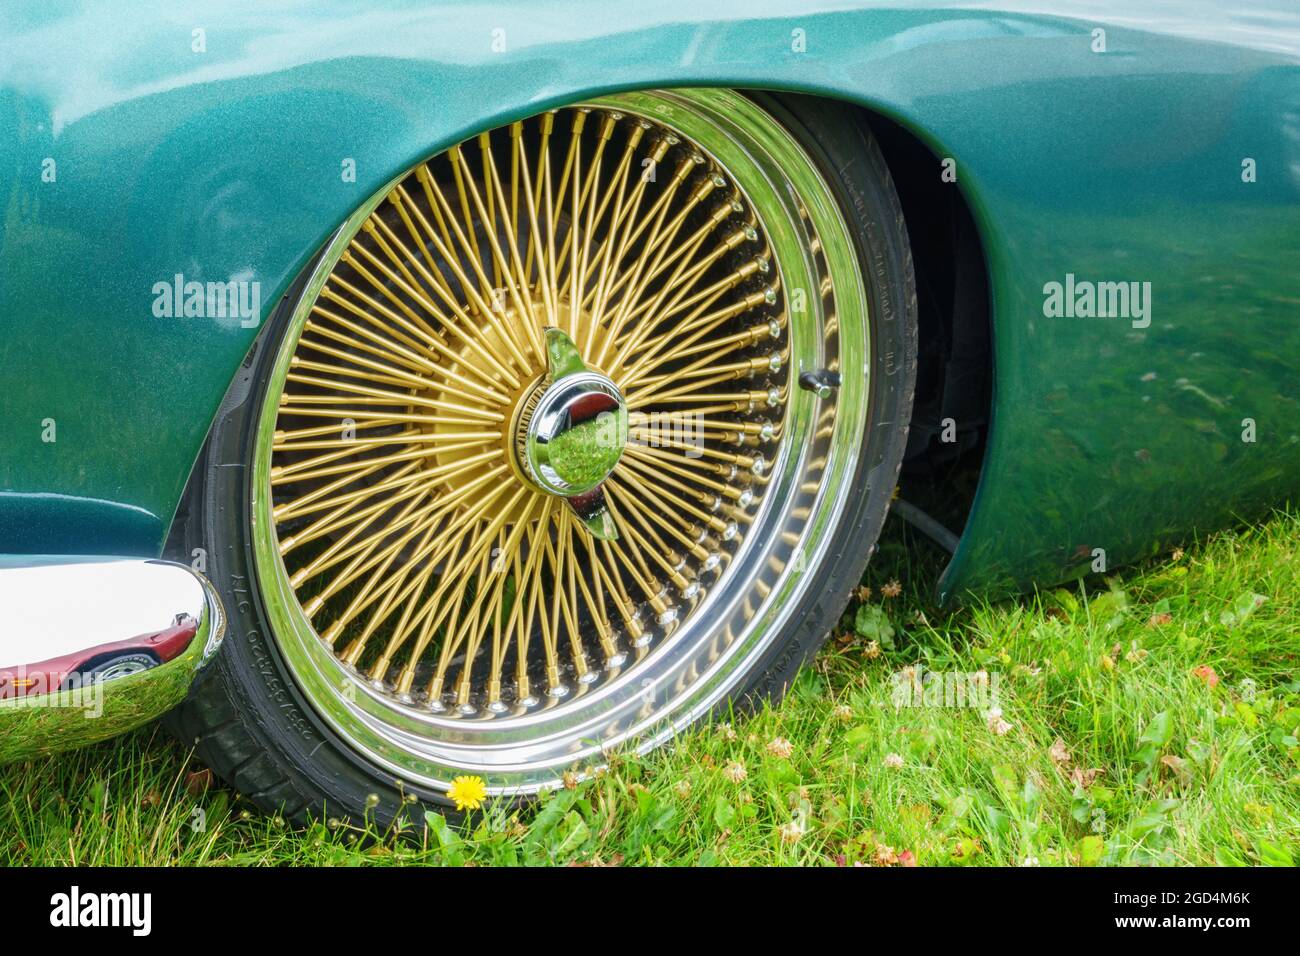 Goldfarbene Speichenfelgen an einem Auto Stockfotografie - Alamy